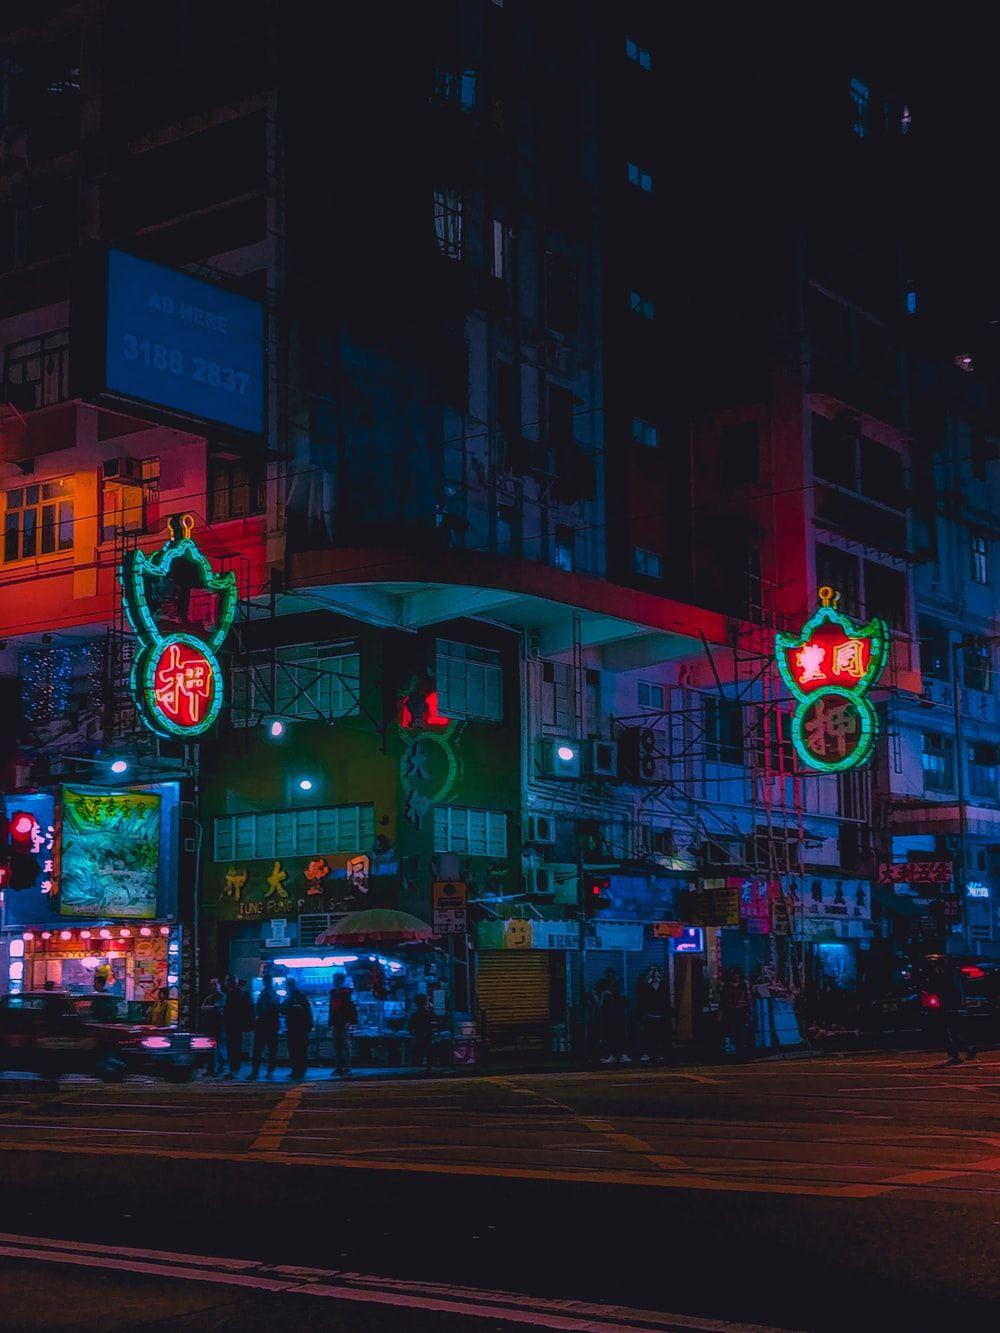 Neon Hong Kong Wallpapers - Top Free Neon Hong Kong Backgrounds ...